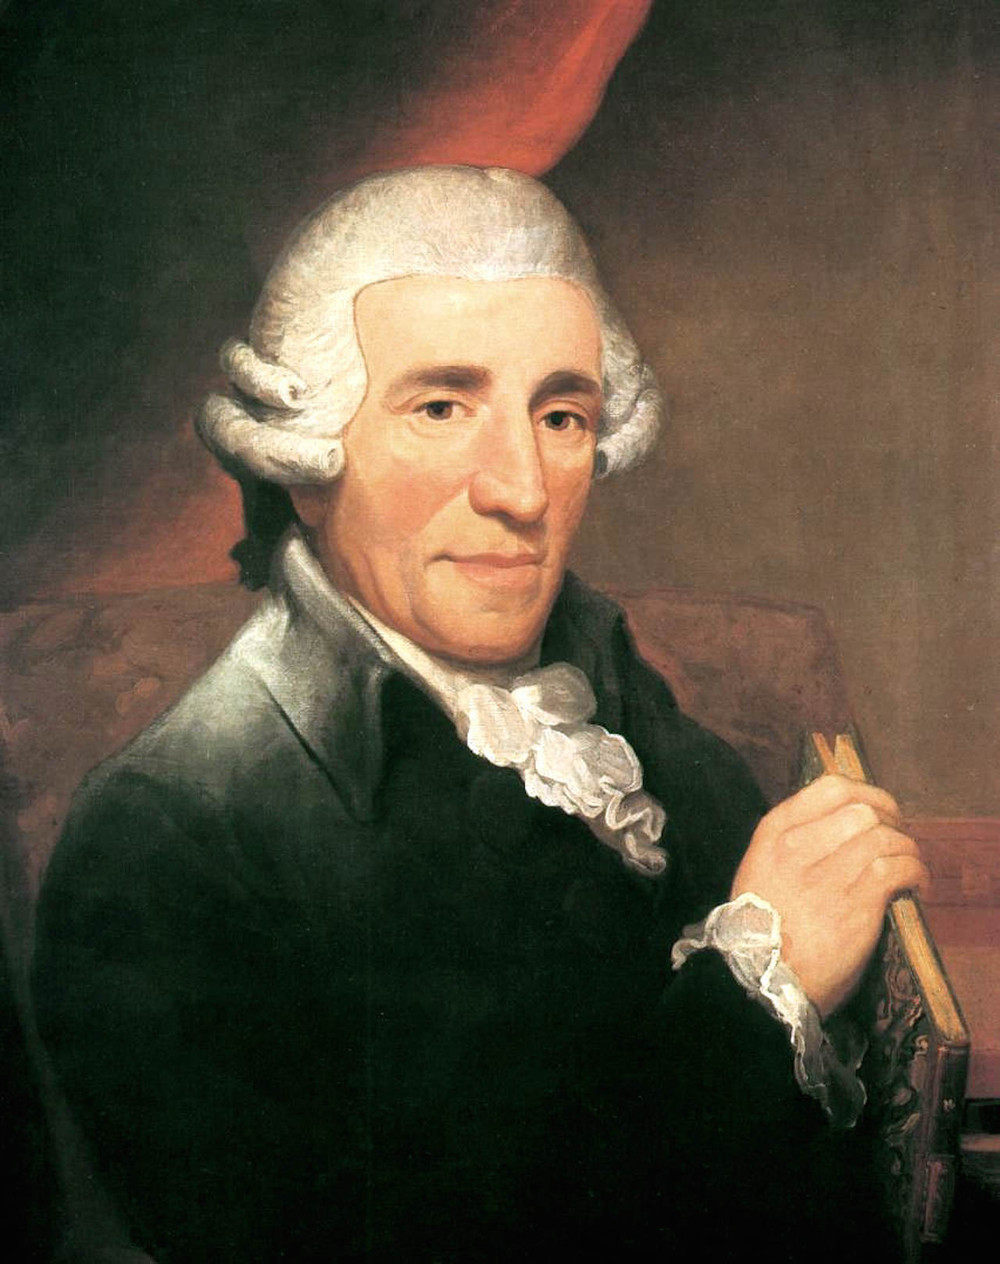 弗朗茨·约瑟夫·海顿 (1732～1809):维也纳古典乐派的奠基人,交响乐